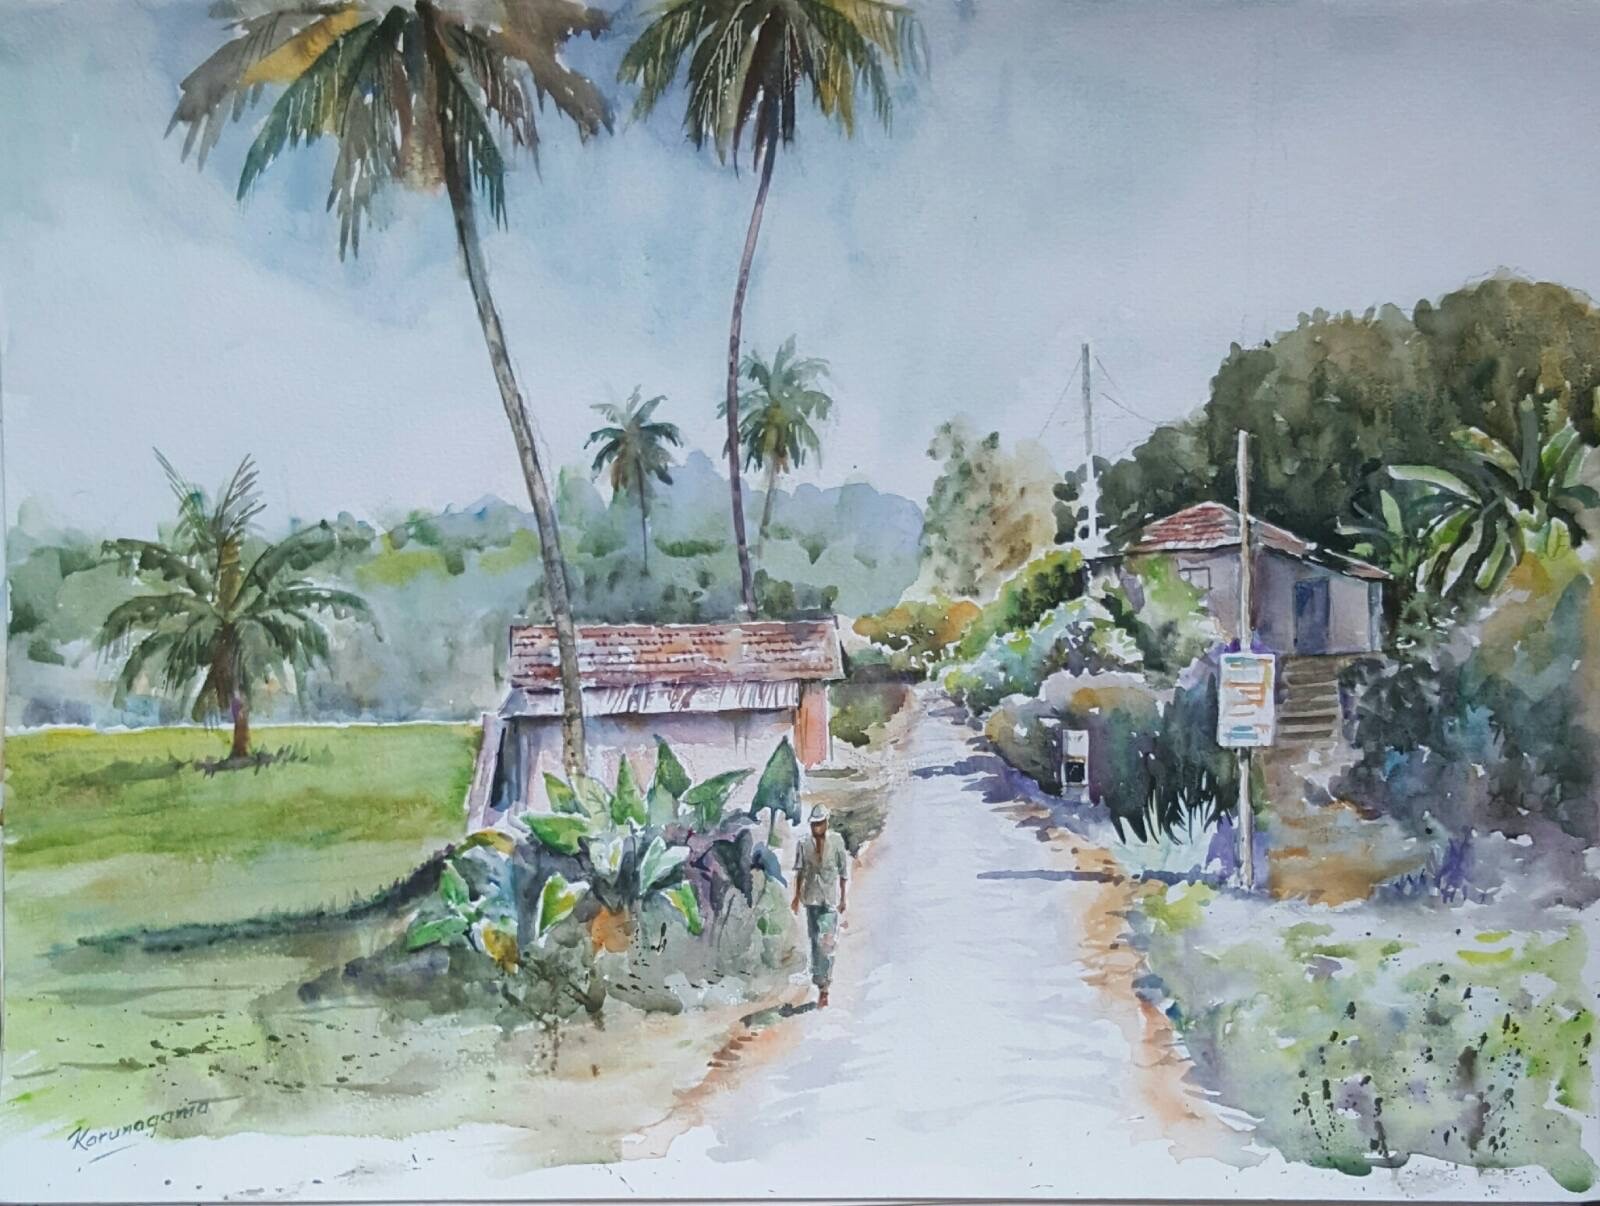 Landscape of a village by Sarath Karunagama